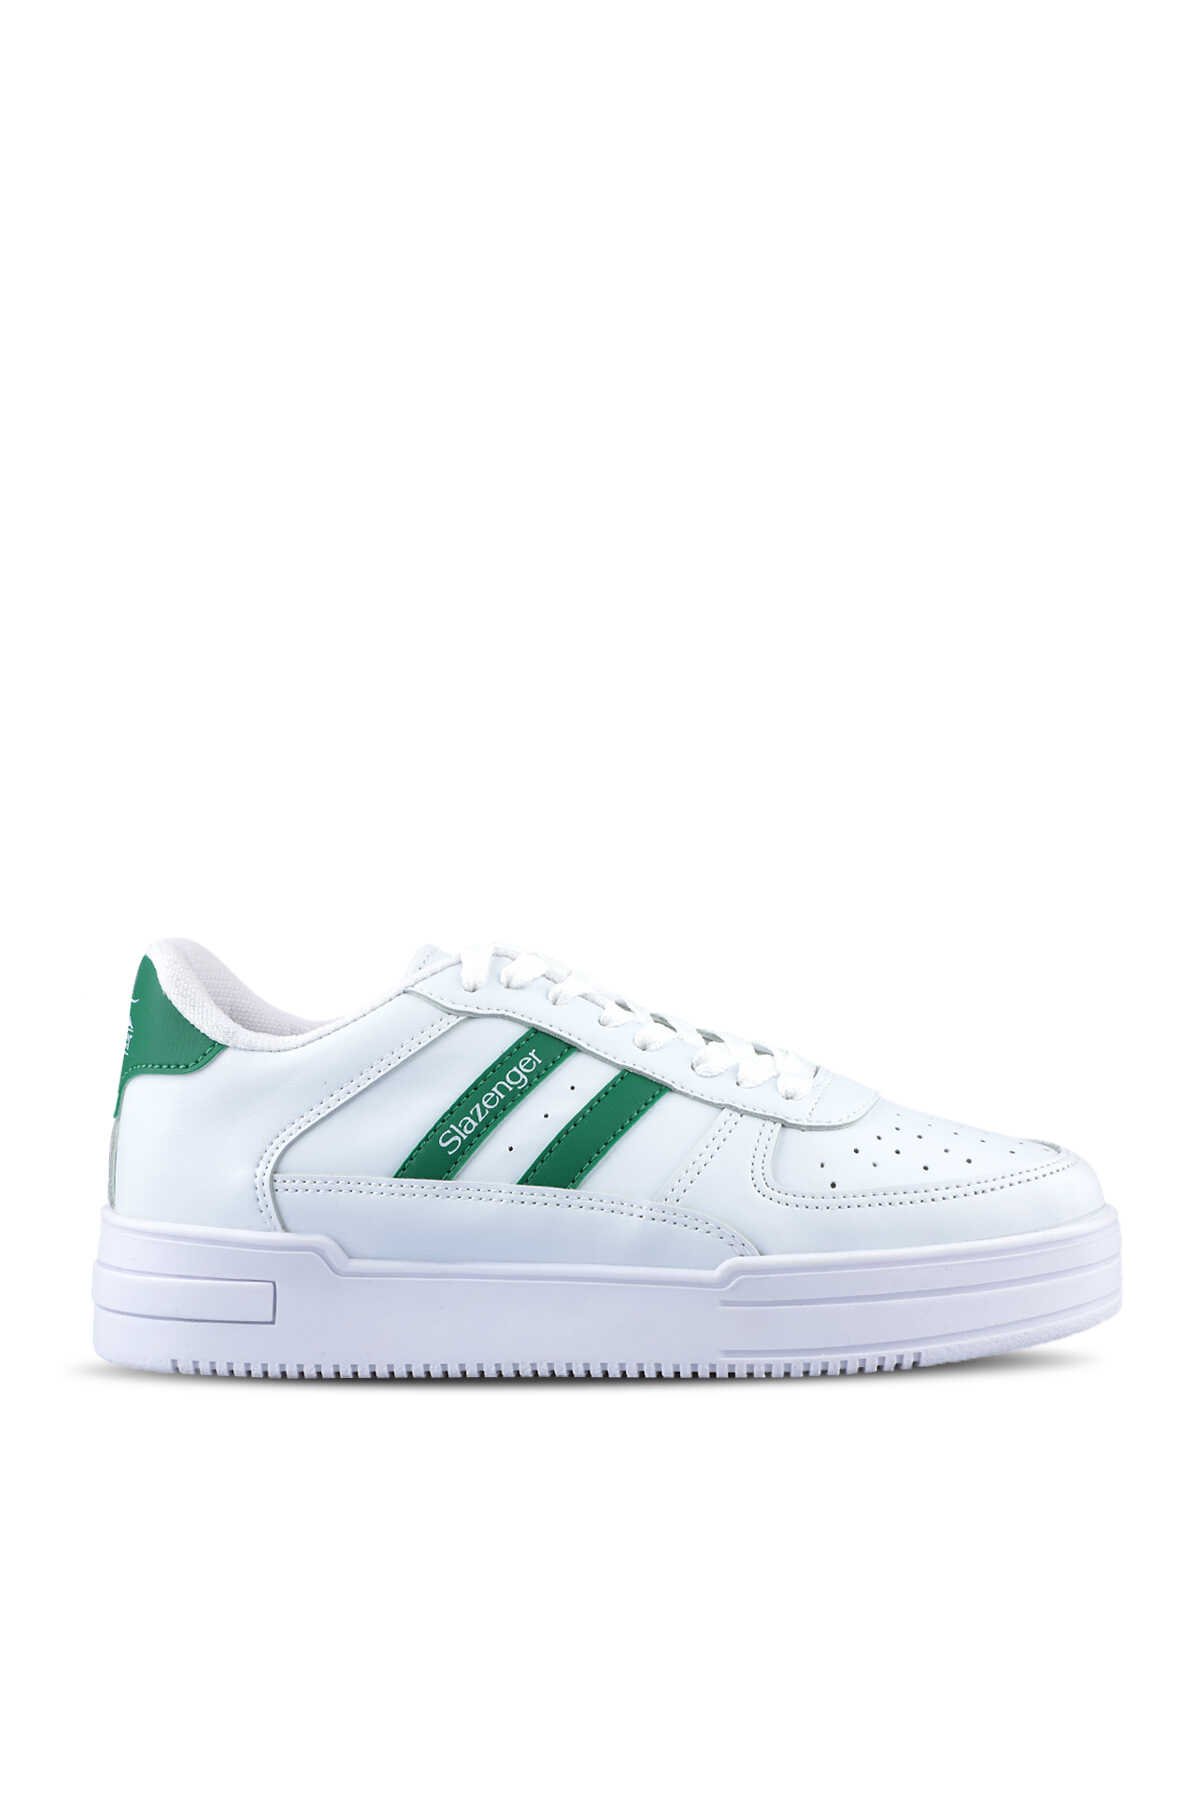 Slazenger - Slazenger CAMP IN Sneaker Kadın Ayakkabı Beyaz / Yeşil